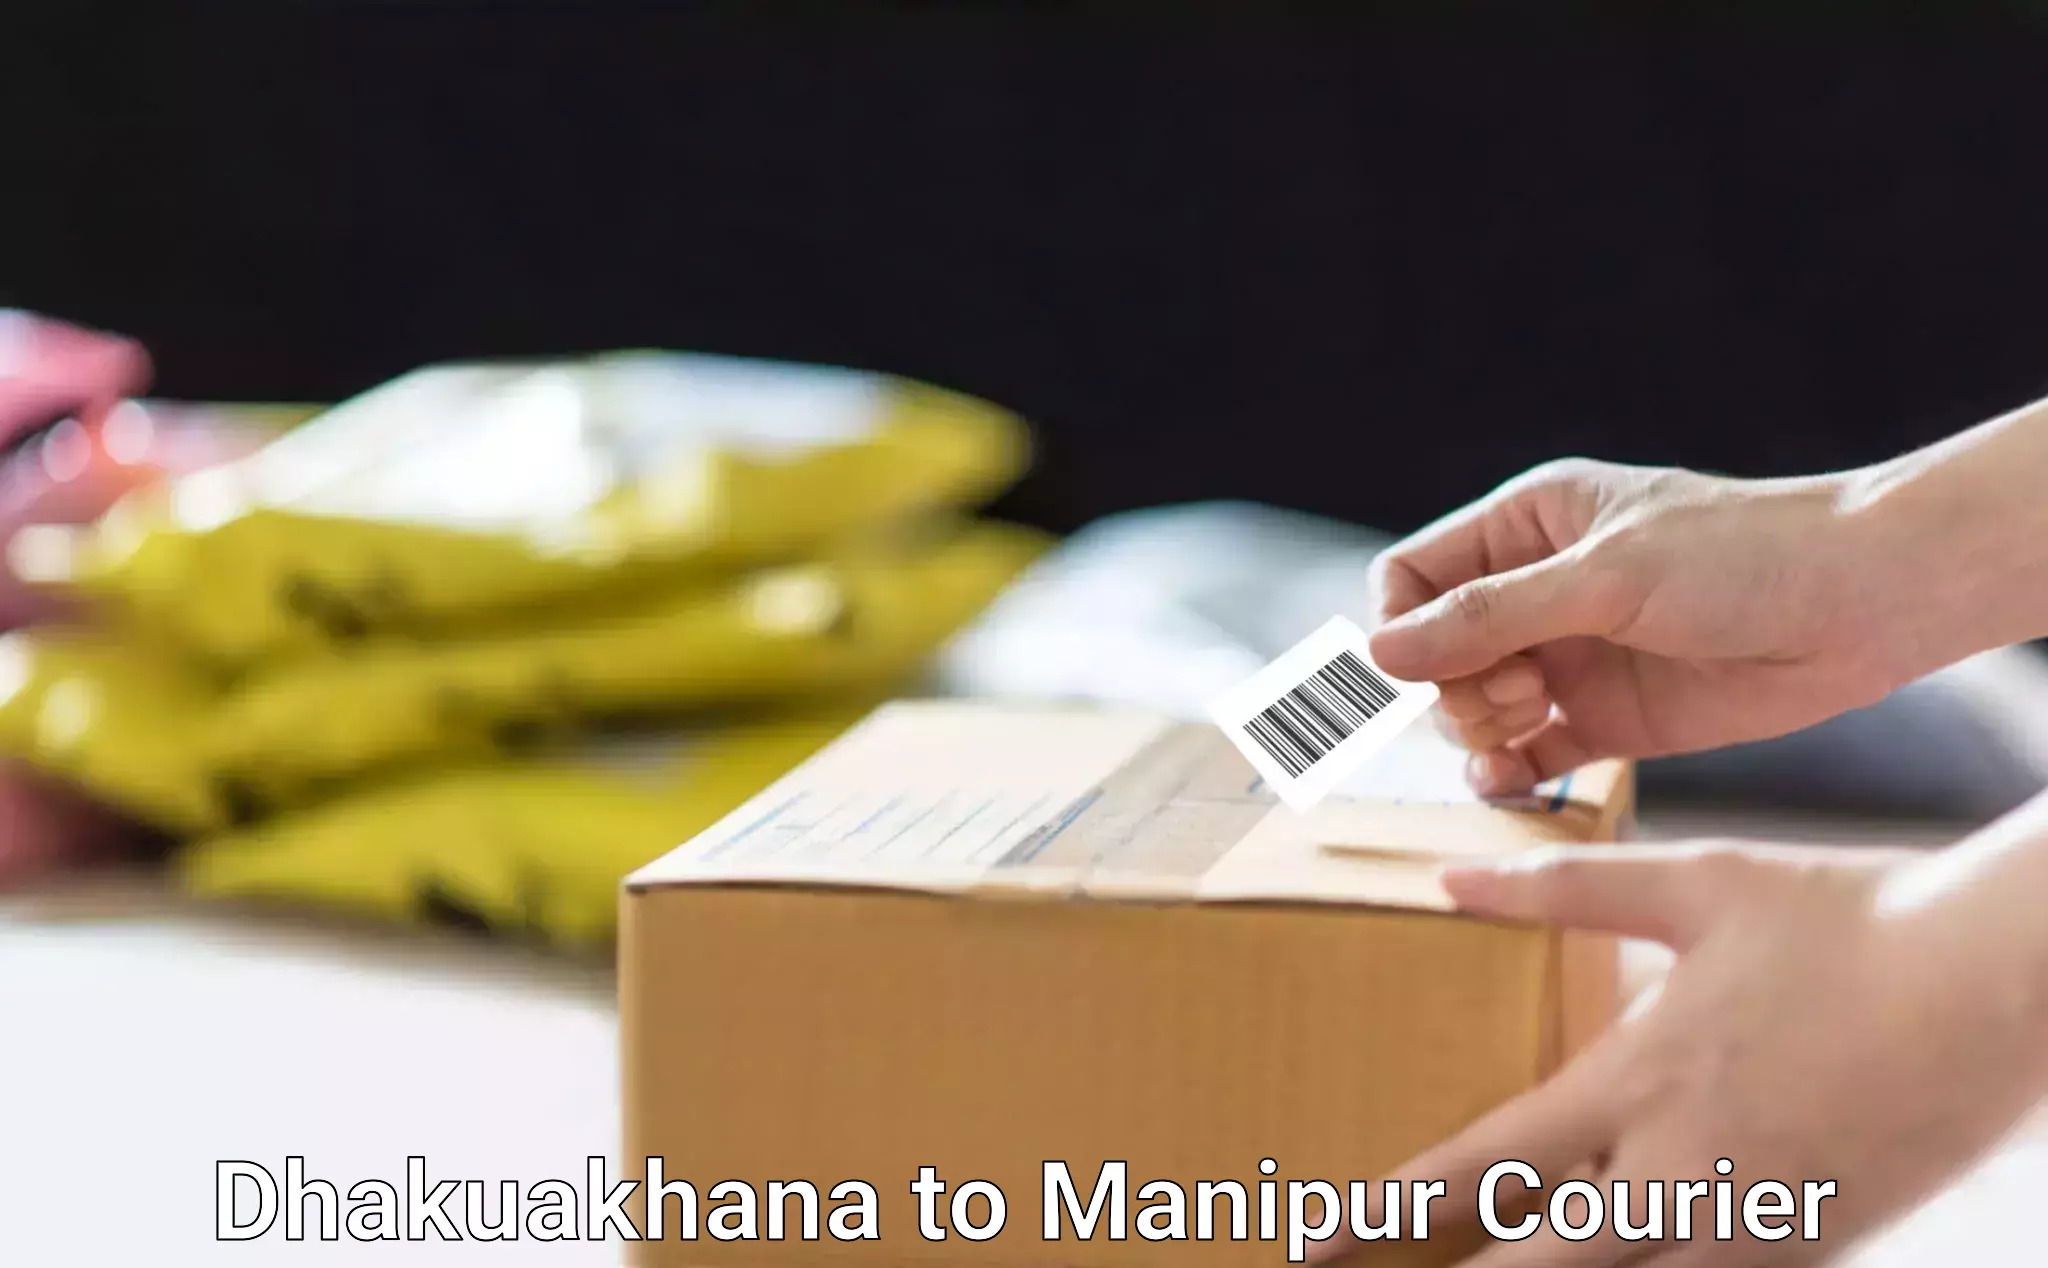 Bulk courier orders Dhakuakhana to Kangpokpi